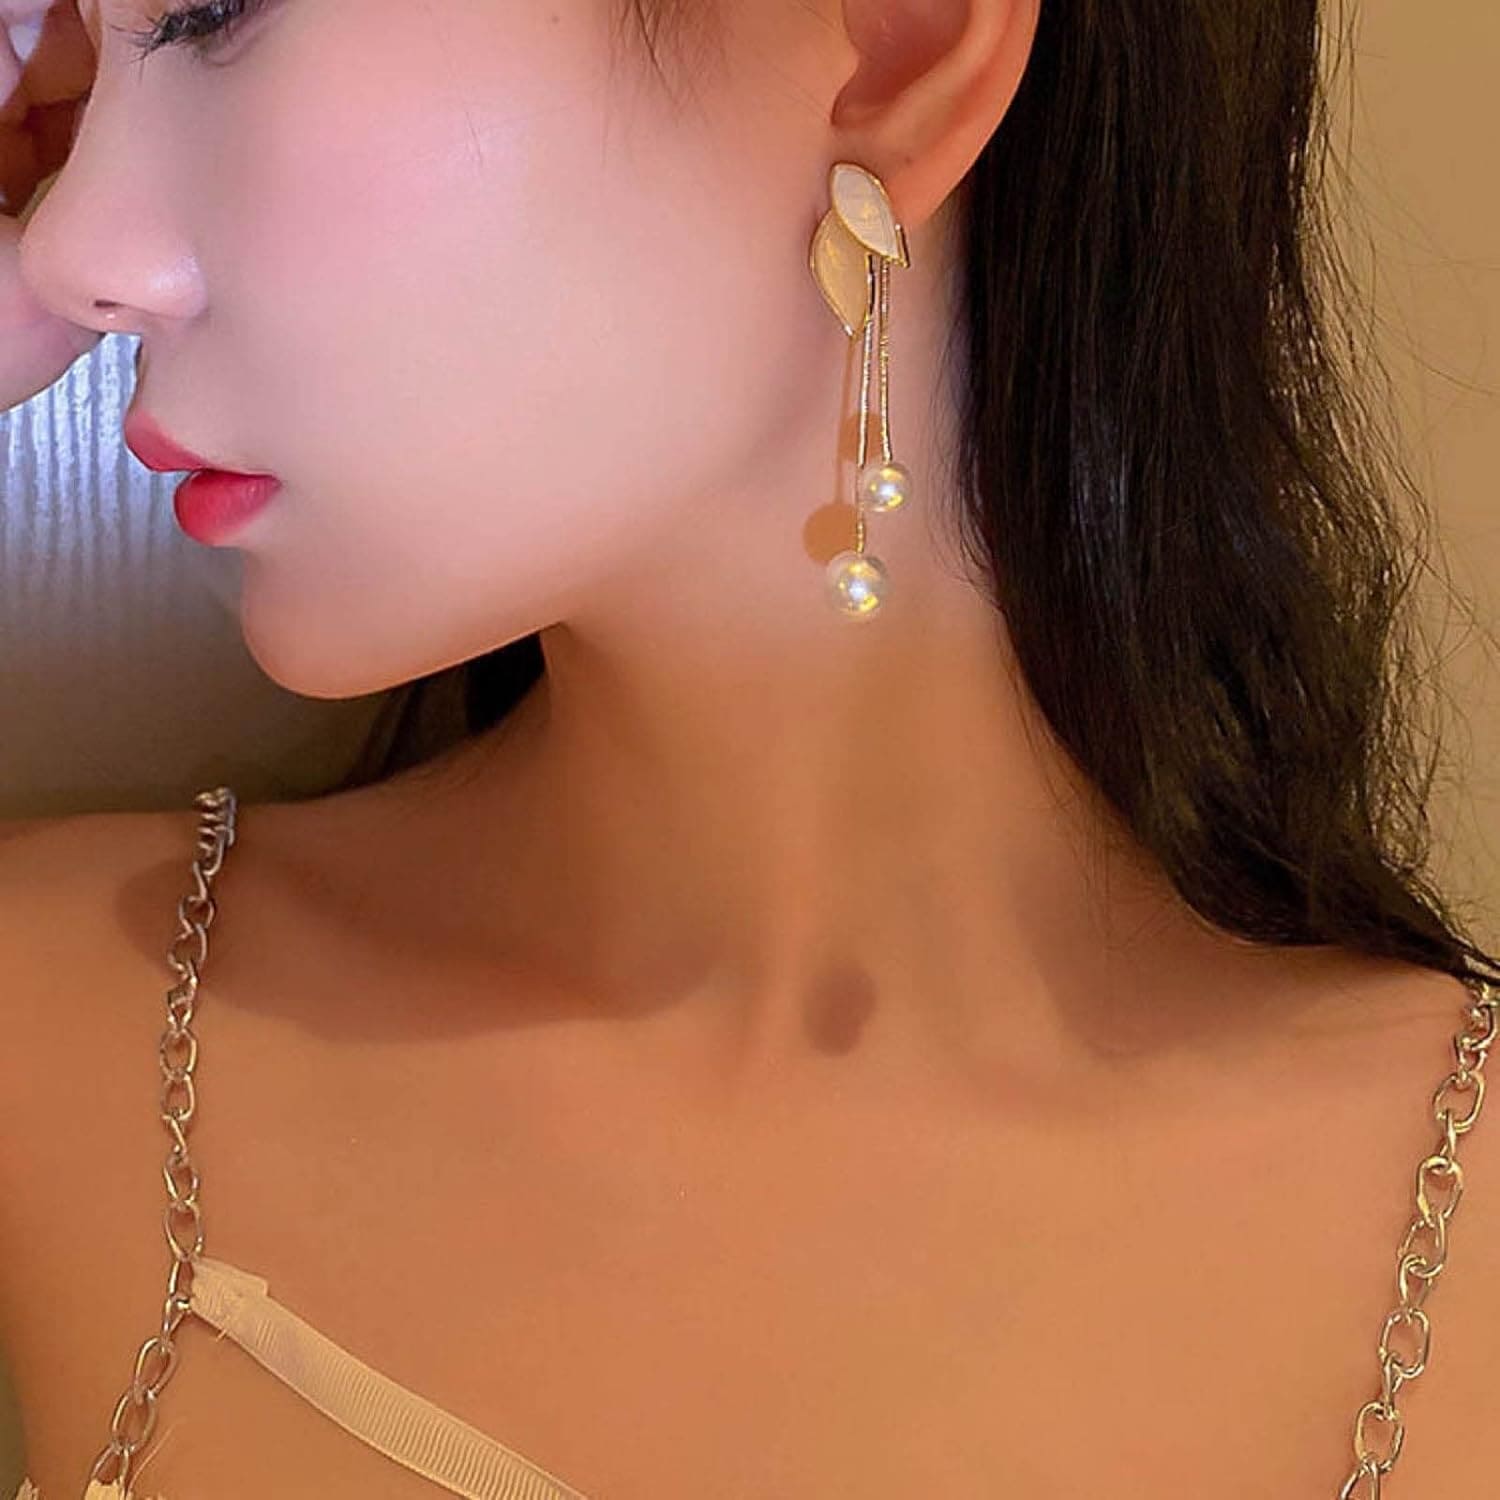 Simulated Pearl Leaf Tassels Earrings, Minimalist Leafy Earrings, Elegant Geometric Hanging Earring, Women Long Tassel Earrings